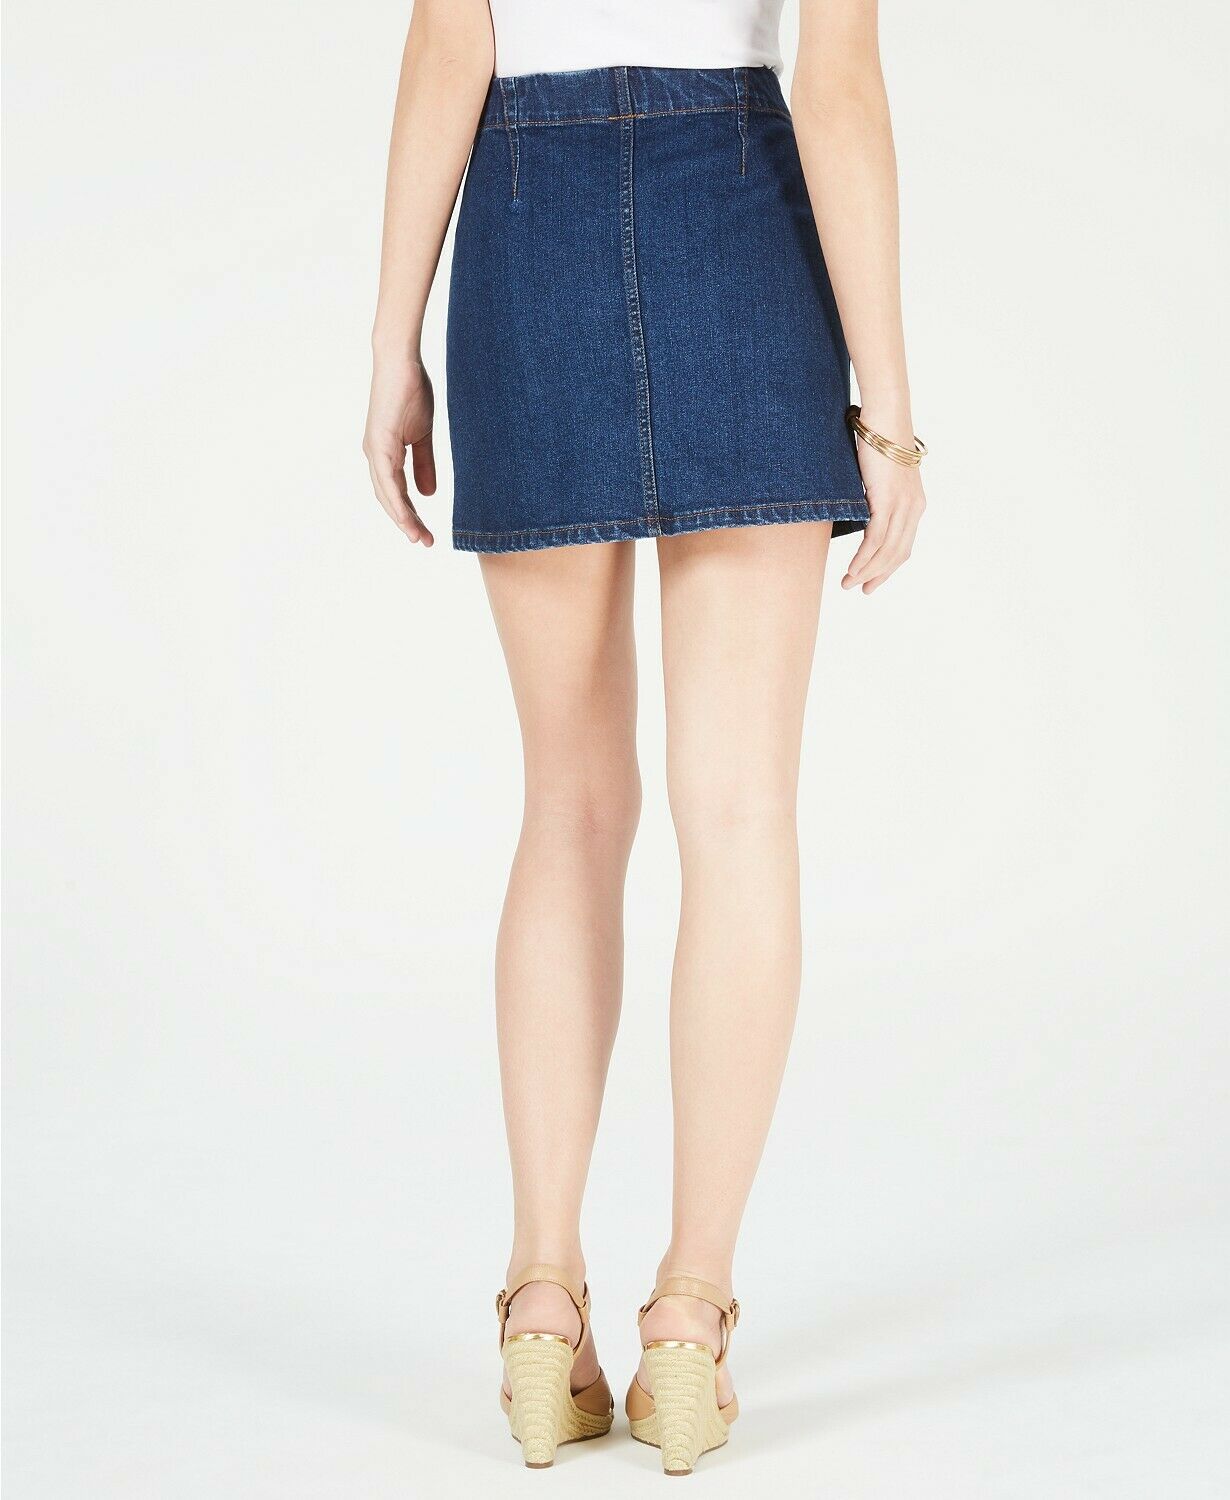 Women OAT Cotton Button-Front Denim Mini A-Line Skirt 2 front pockets 2 colors